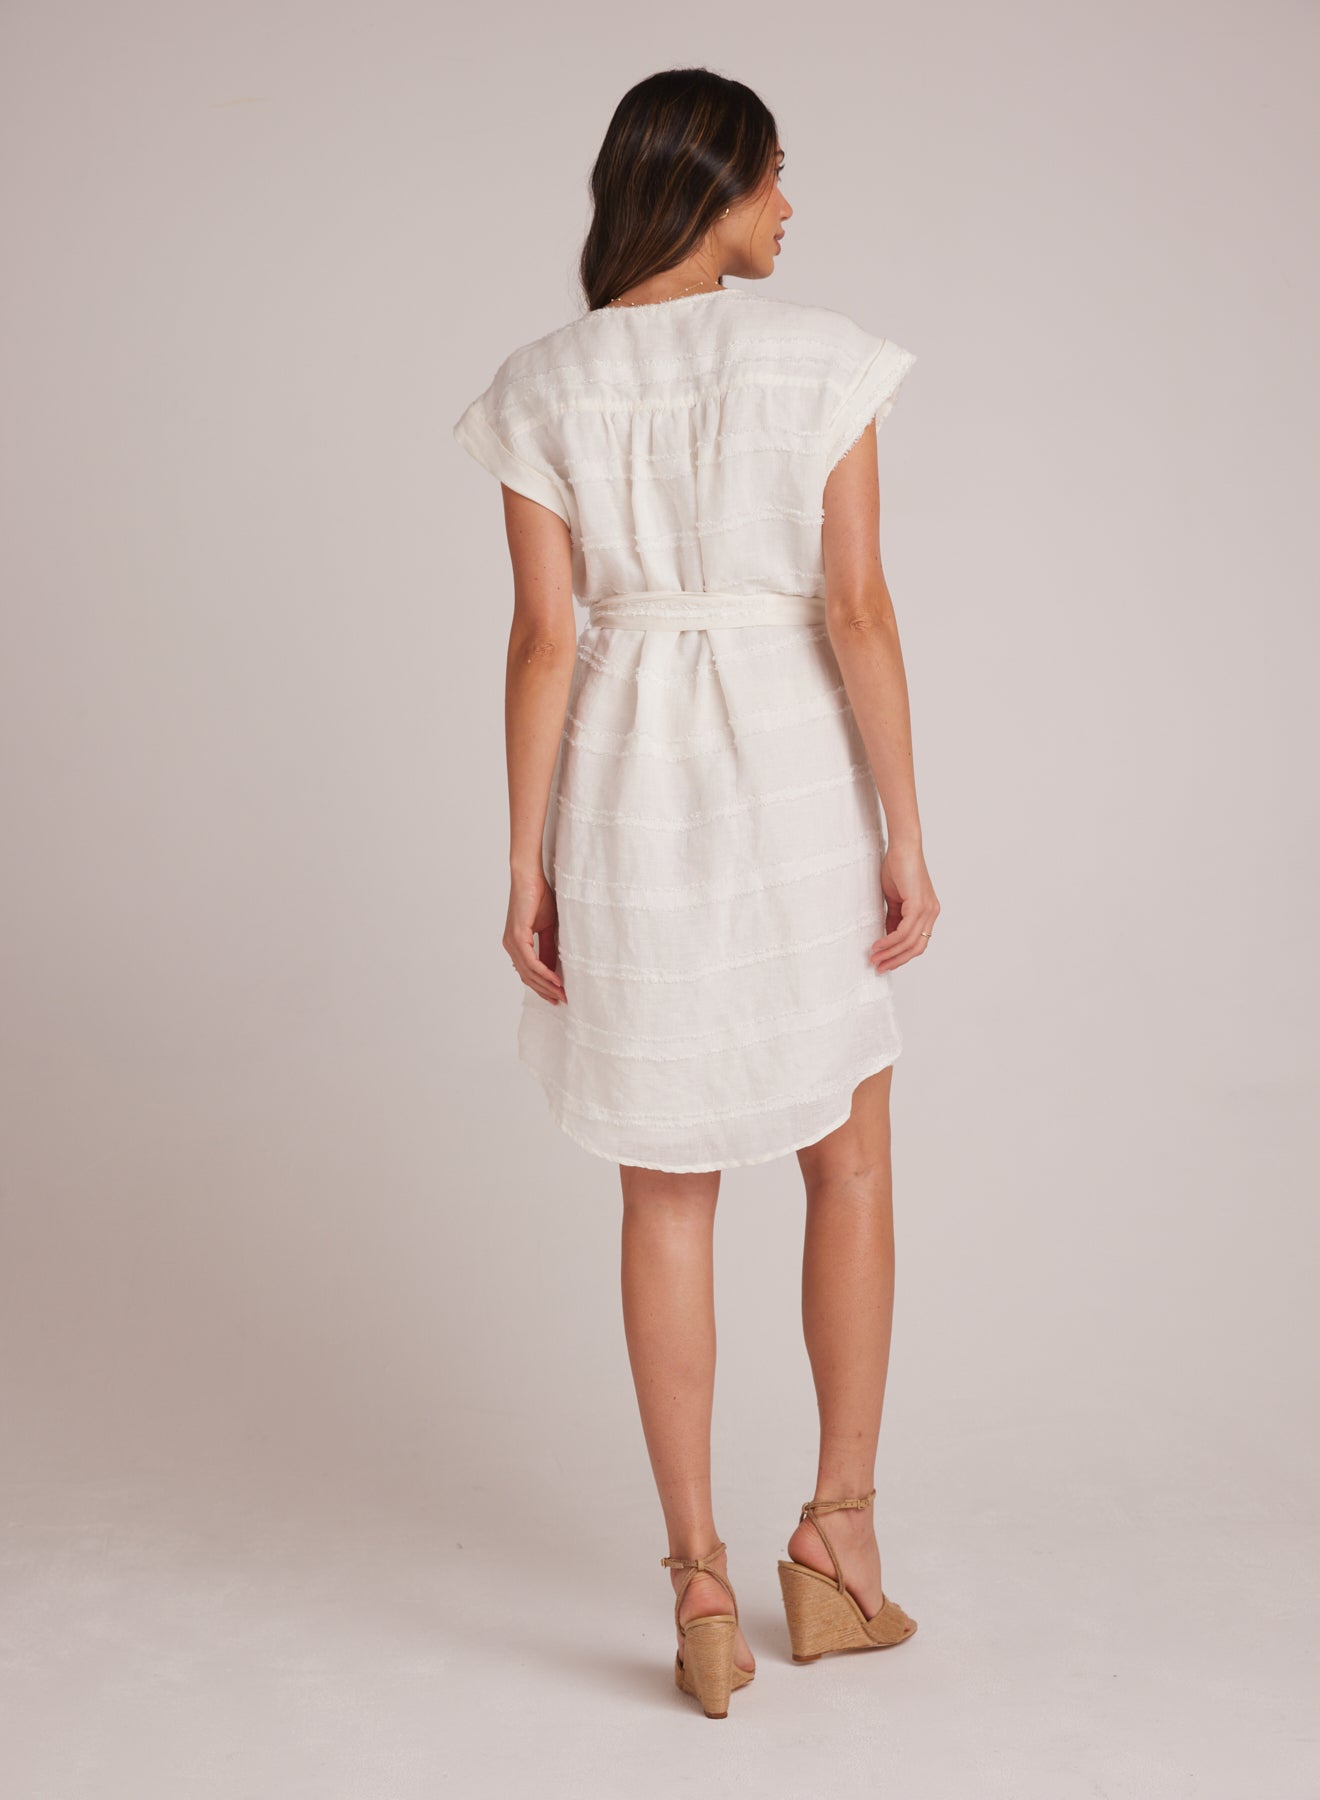 Bella DahlBelted Cap Sleeve Dress - WhiteDresses